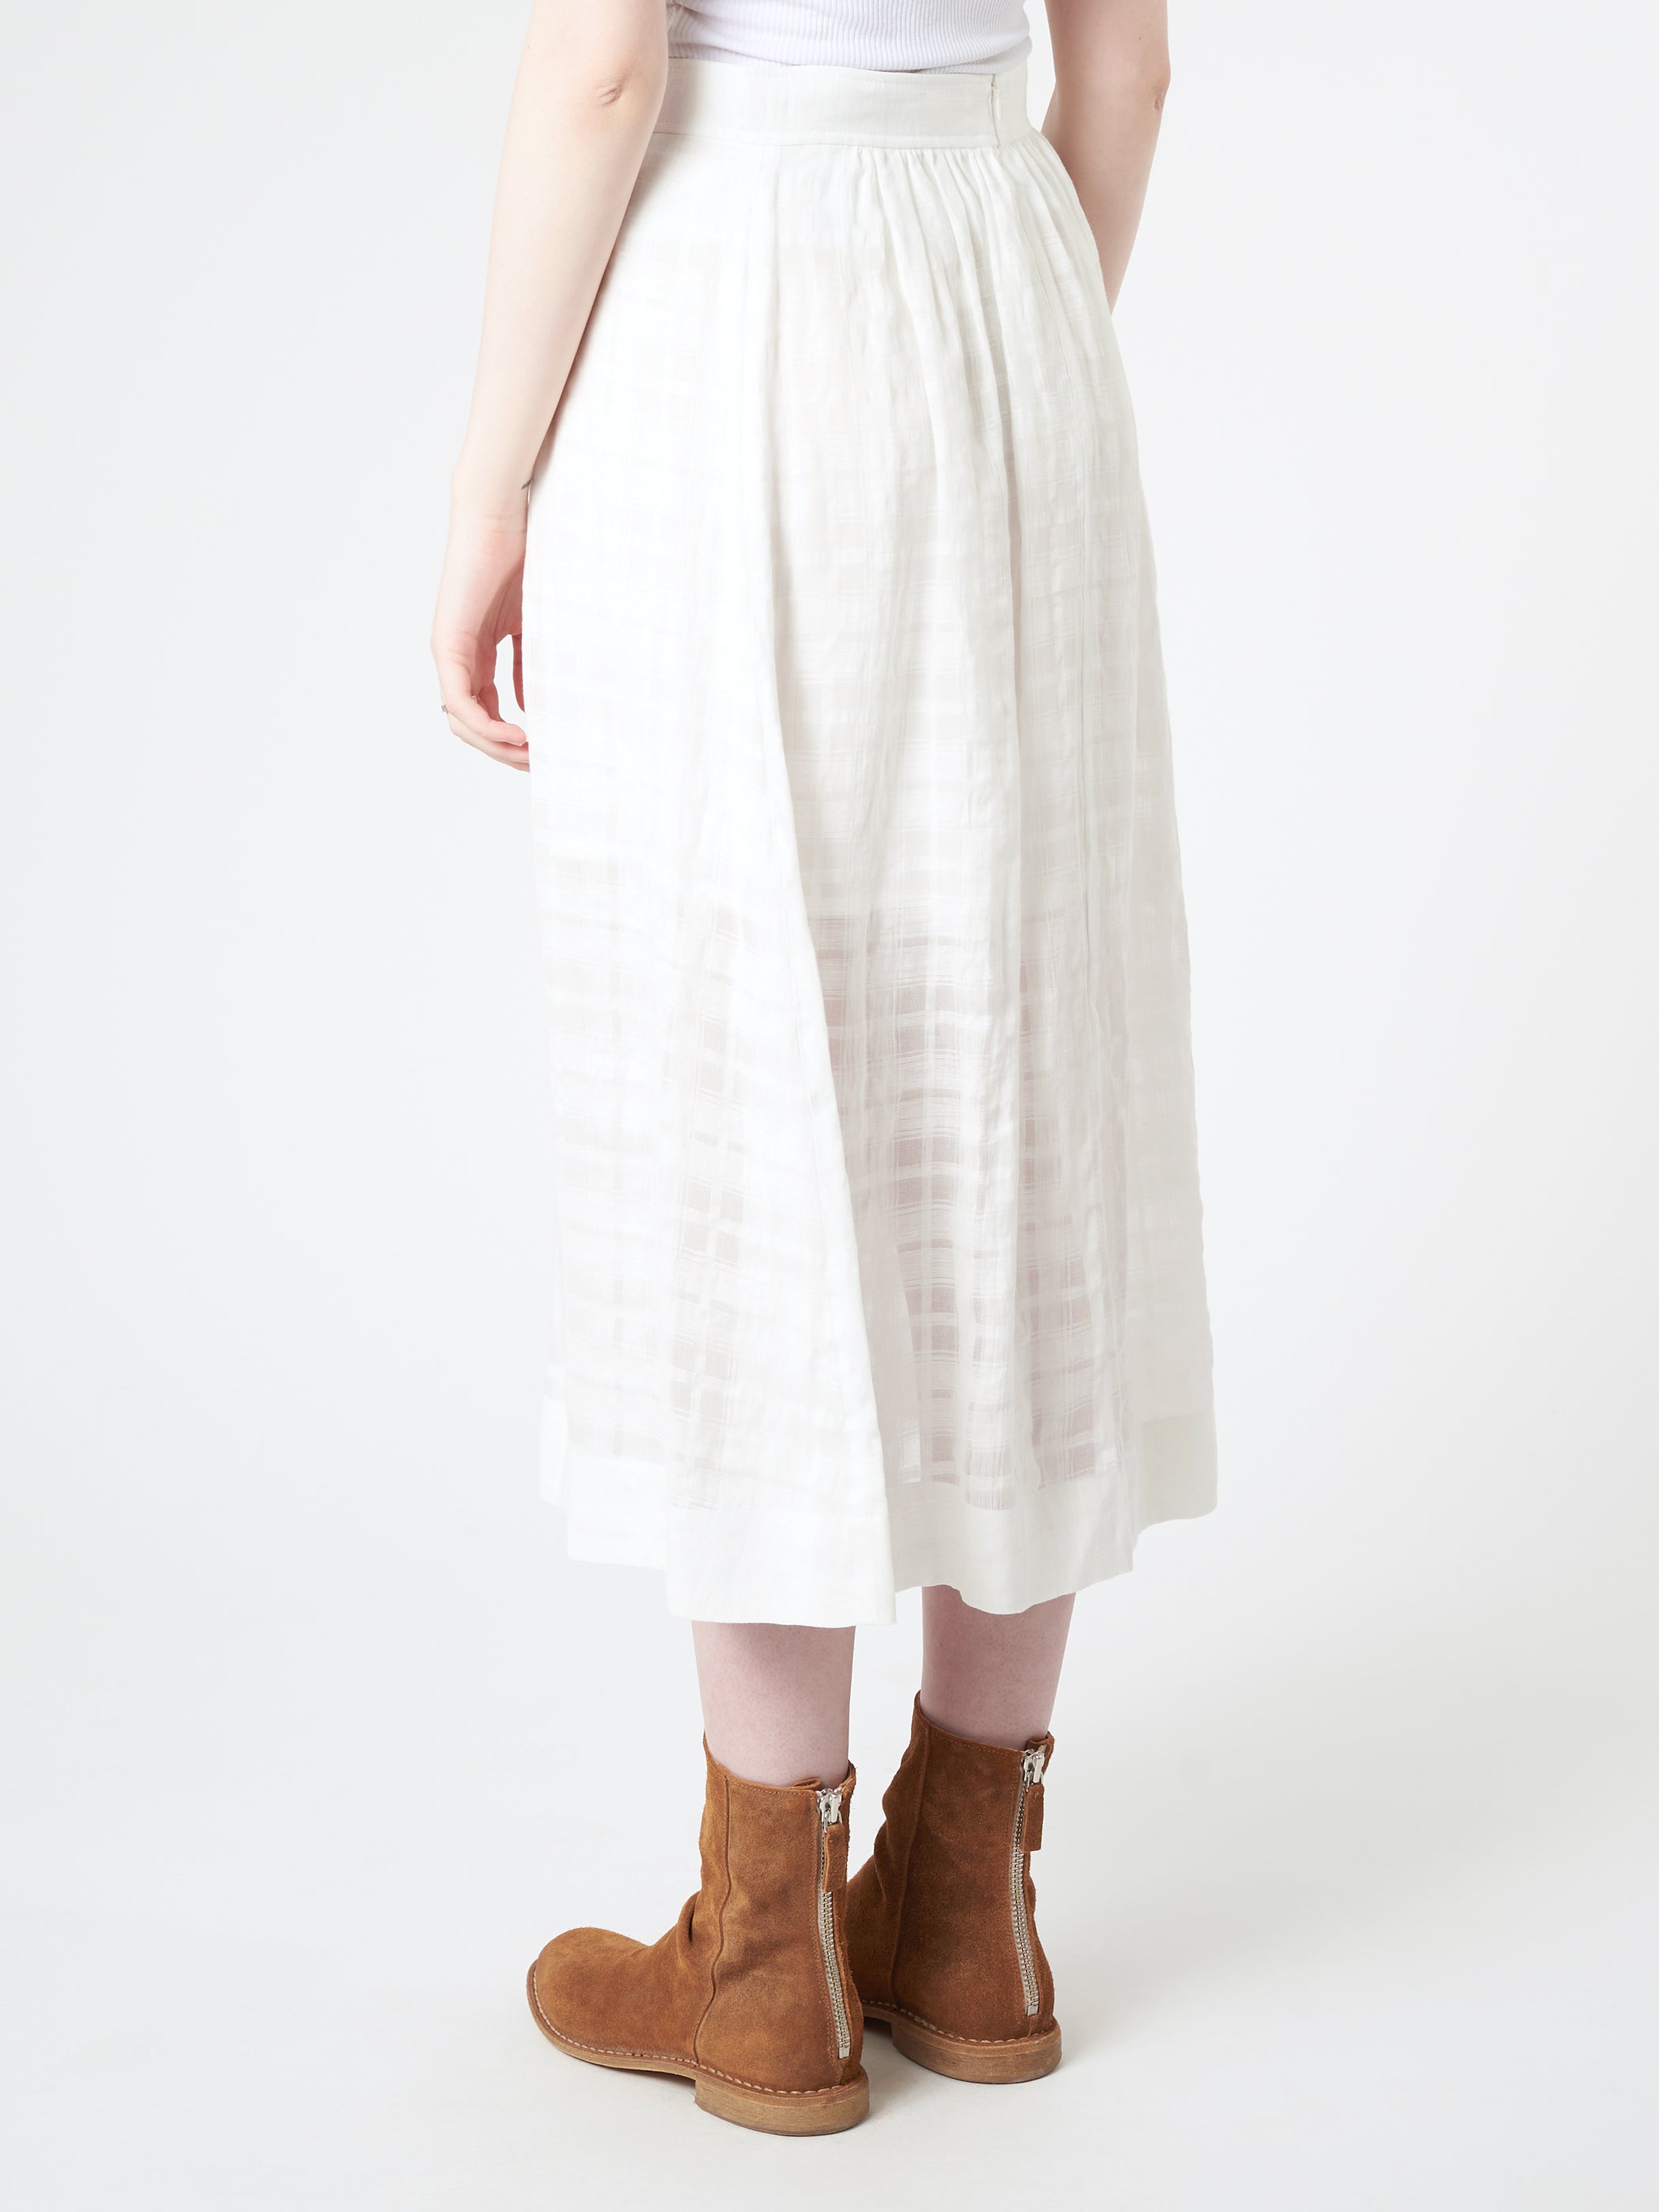 Ravenna Longue Skirt